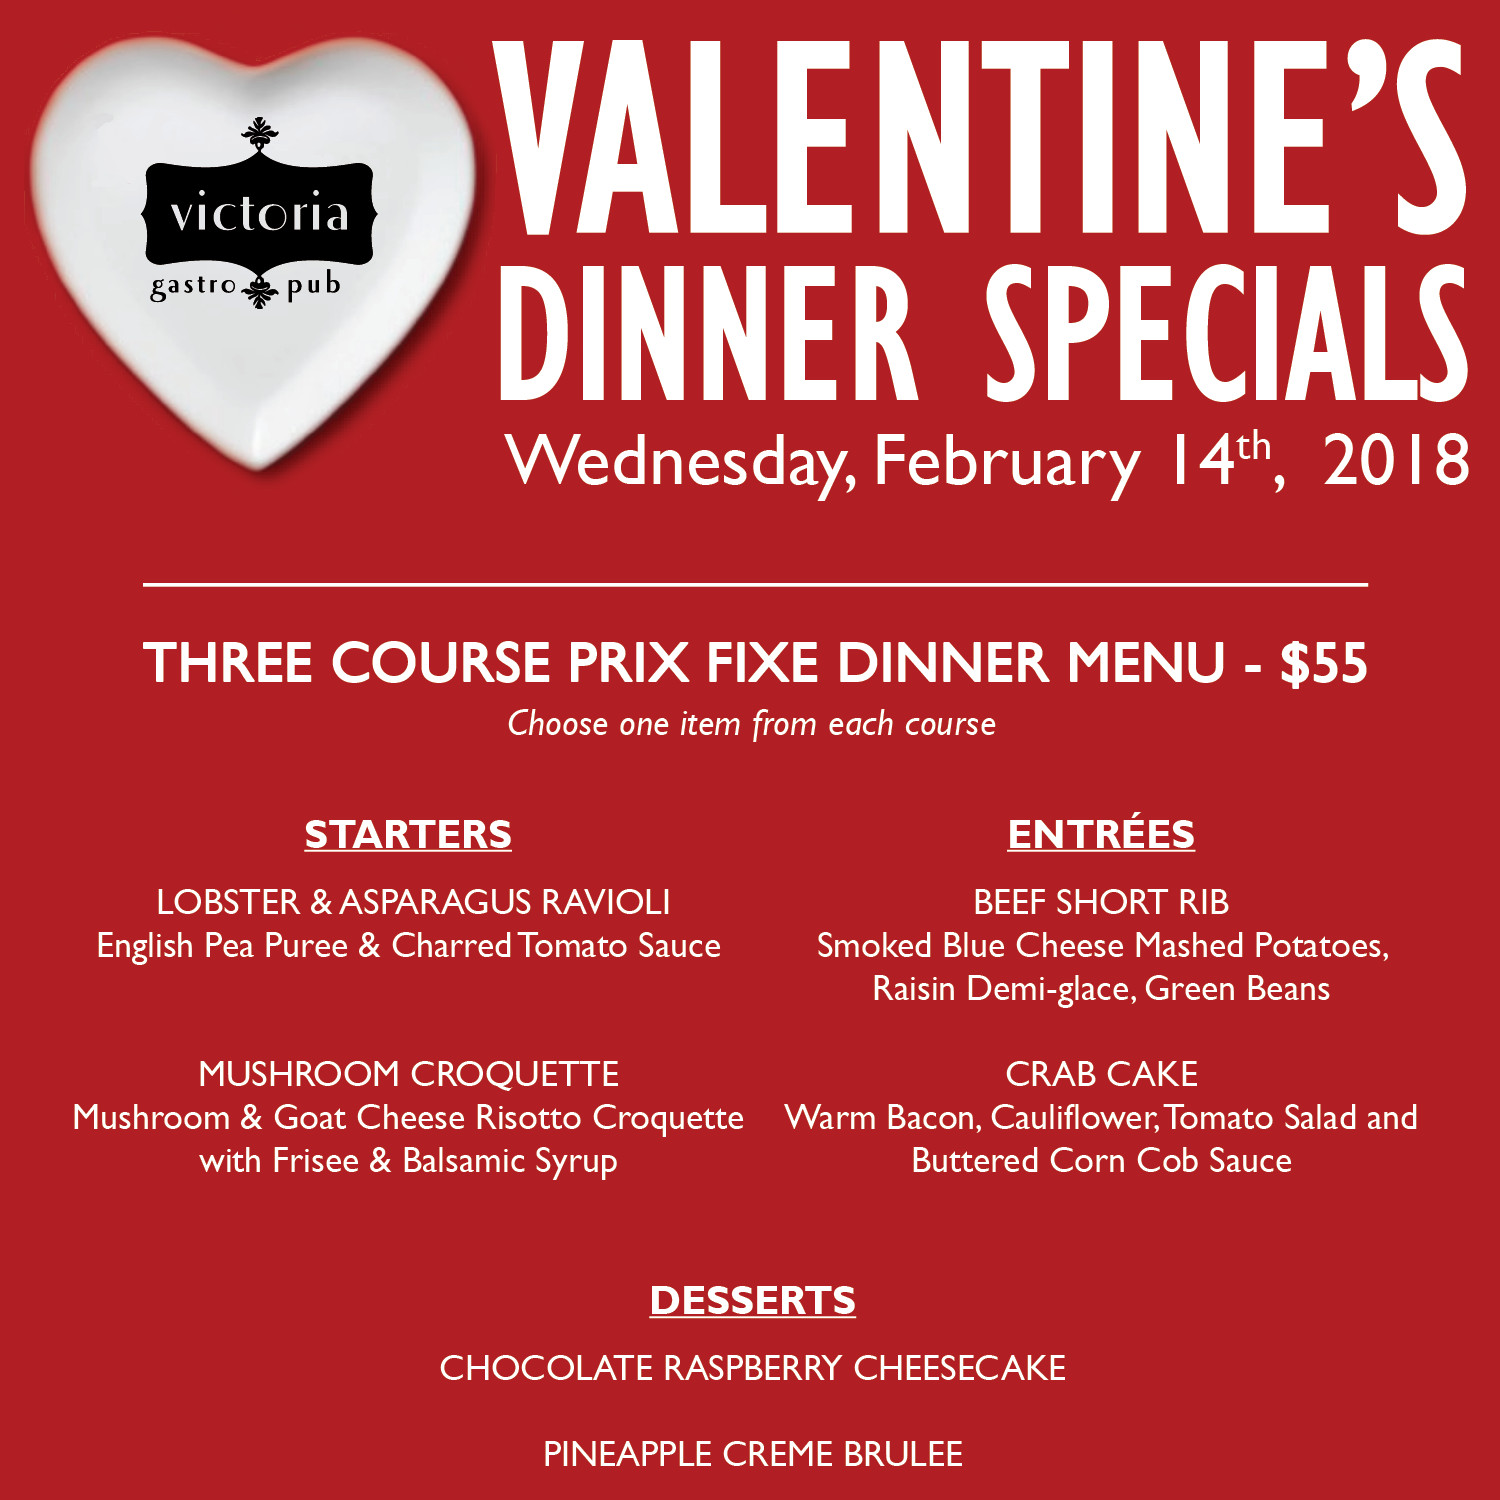 Valentines Dinner Deals
 Valentine s Dinner Specials Victoria Gastro Pub